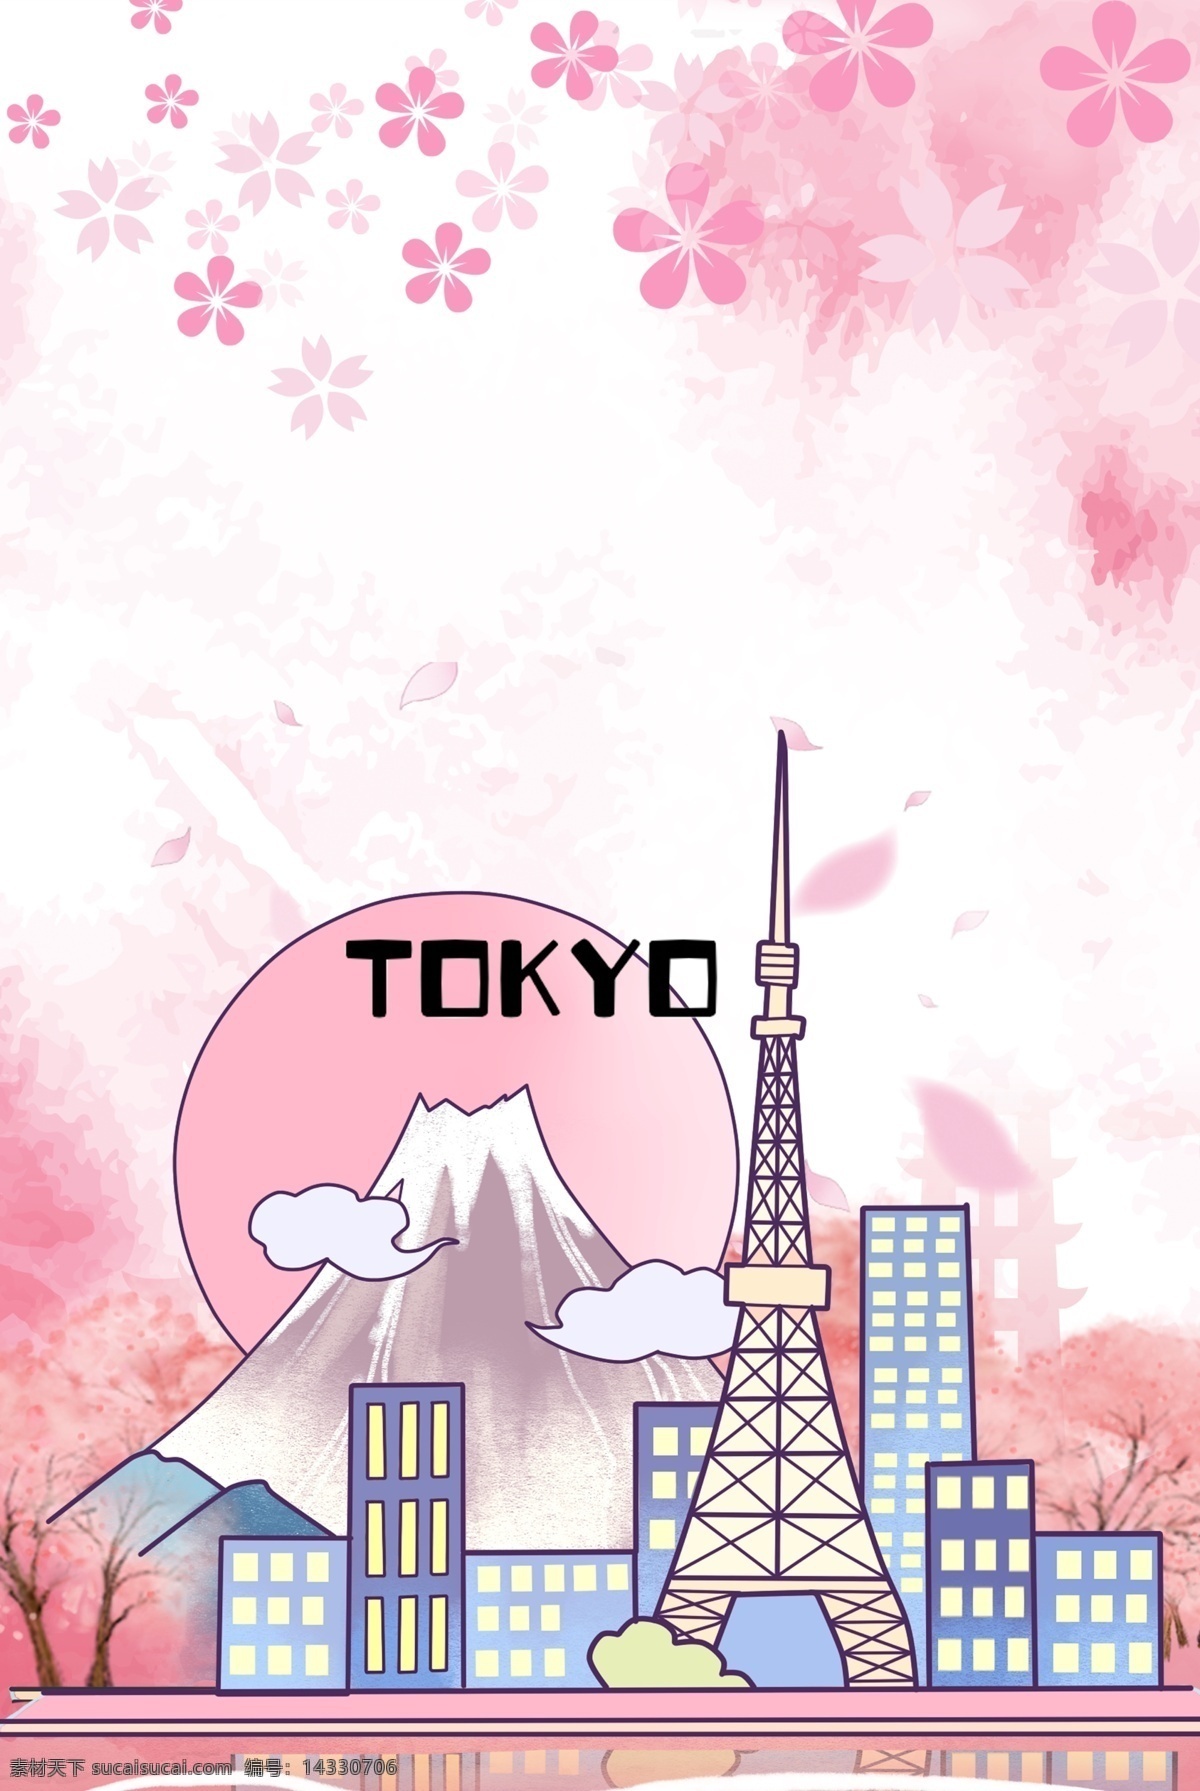 创意 简约 日本 东京 旅游 合成 背景 环球 旅行 樱花 景点 日本建筑 日本游 国外游 卡通